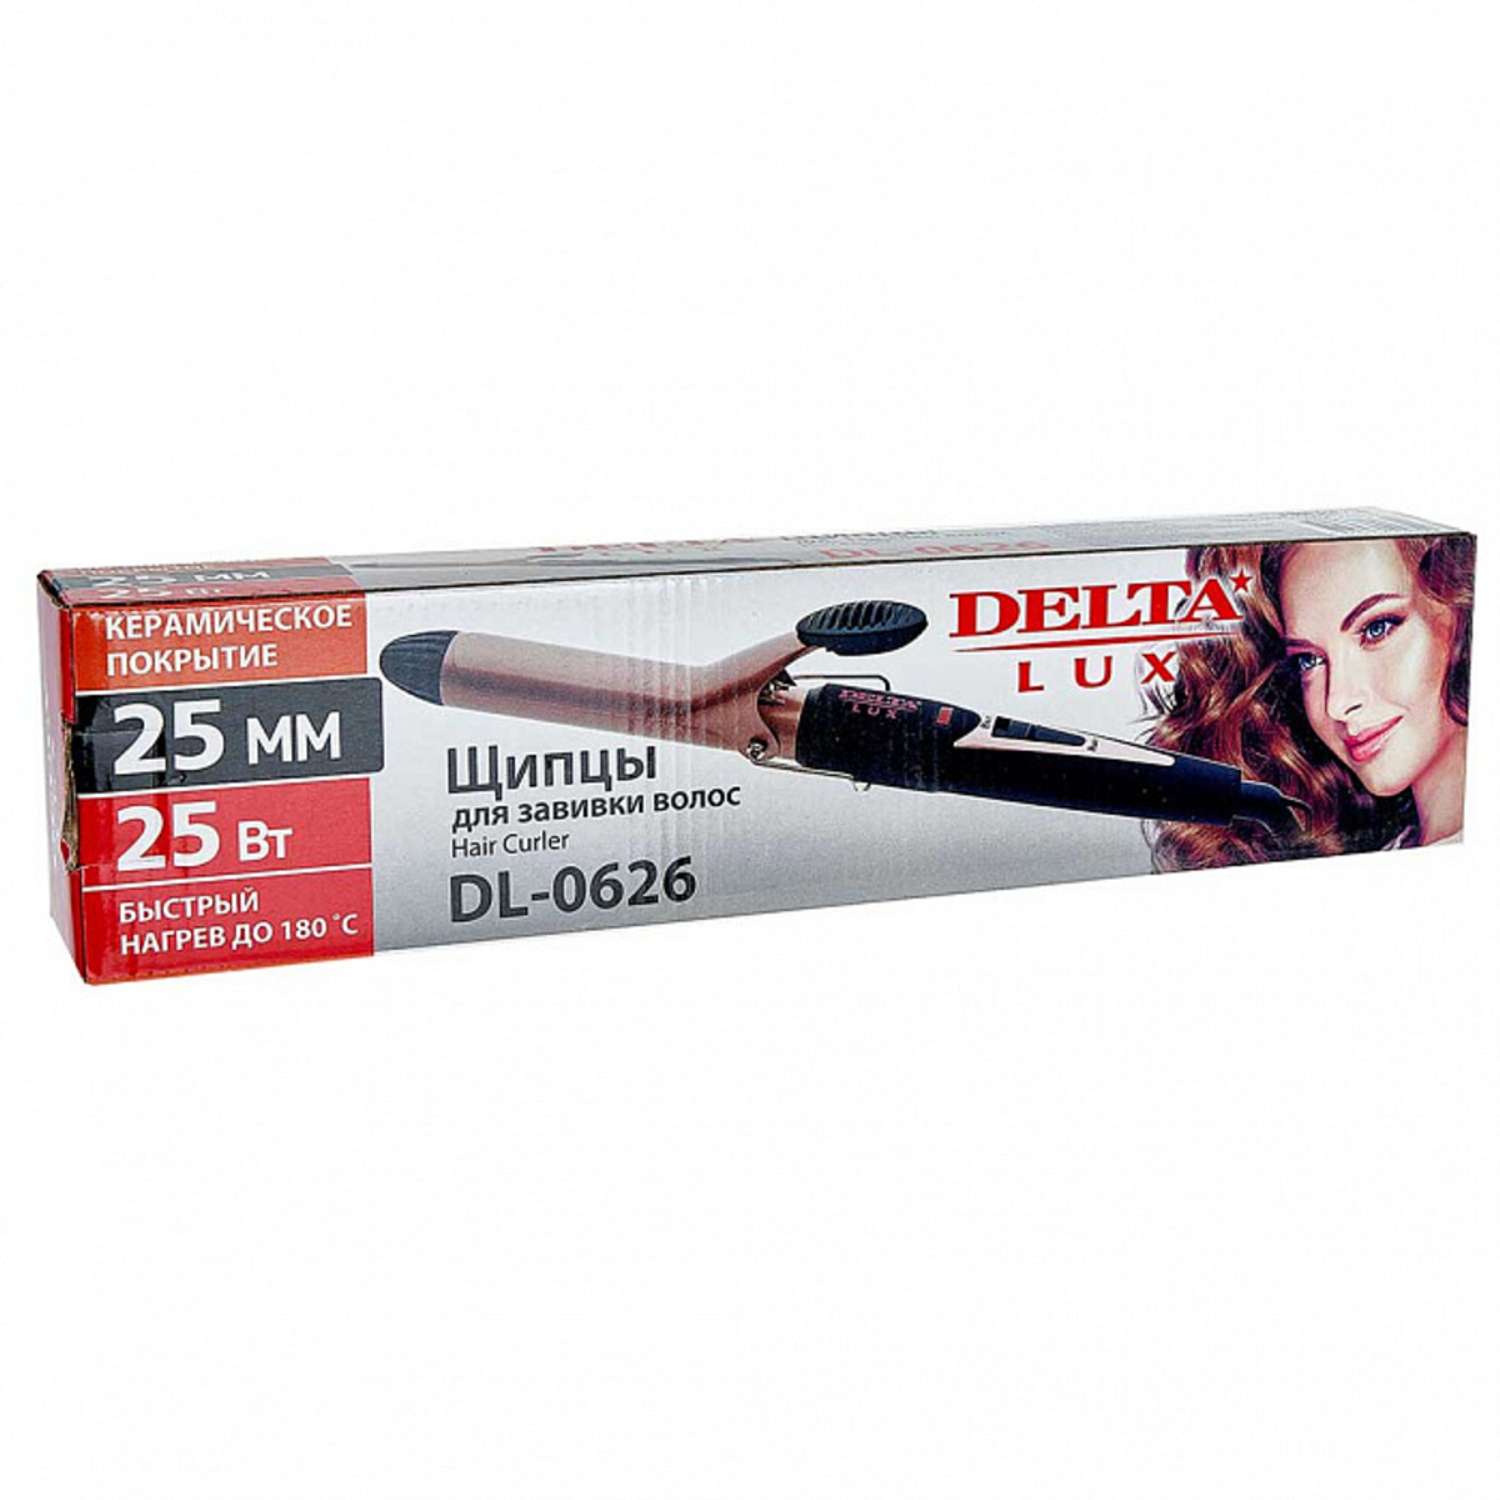 Стайлер для завивки волос Delta Lux DL-0626 коричневый с керамическим покрытием 25 Вт - фото 4